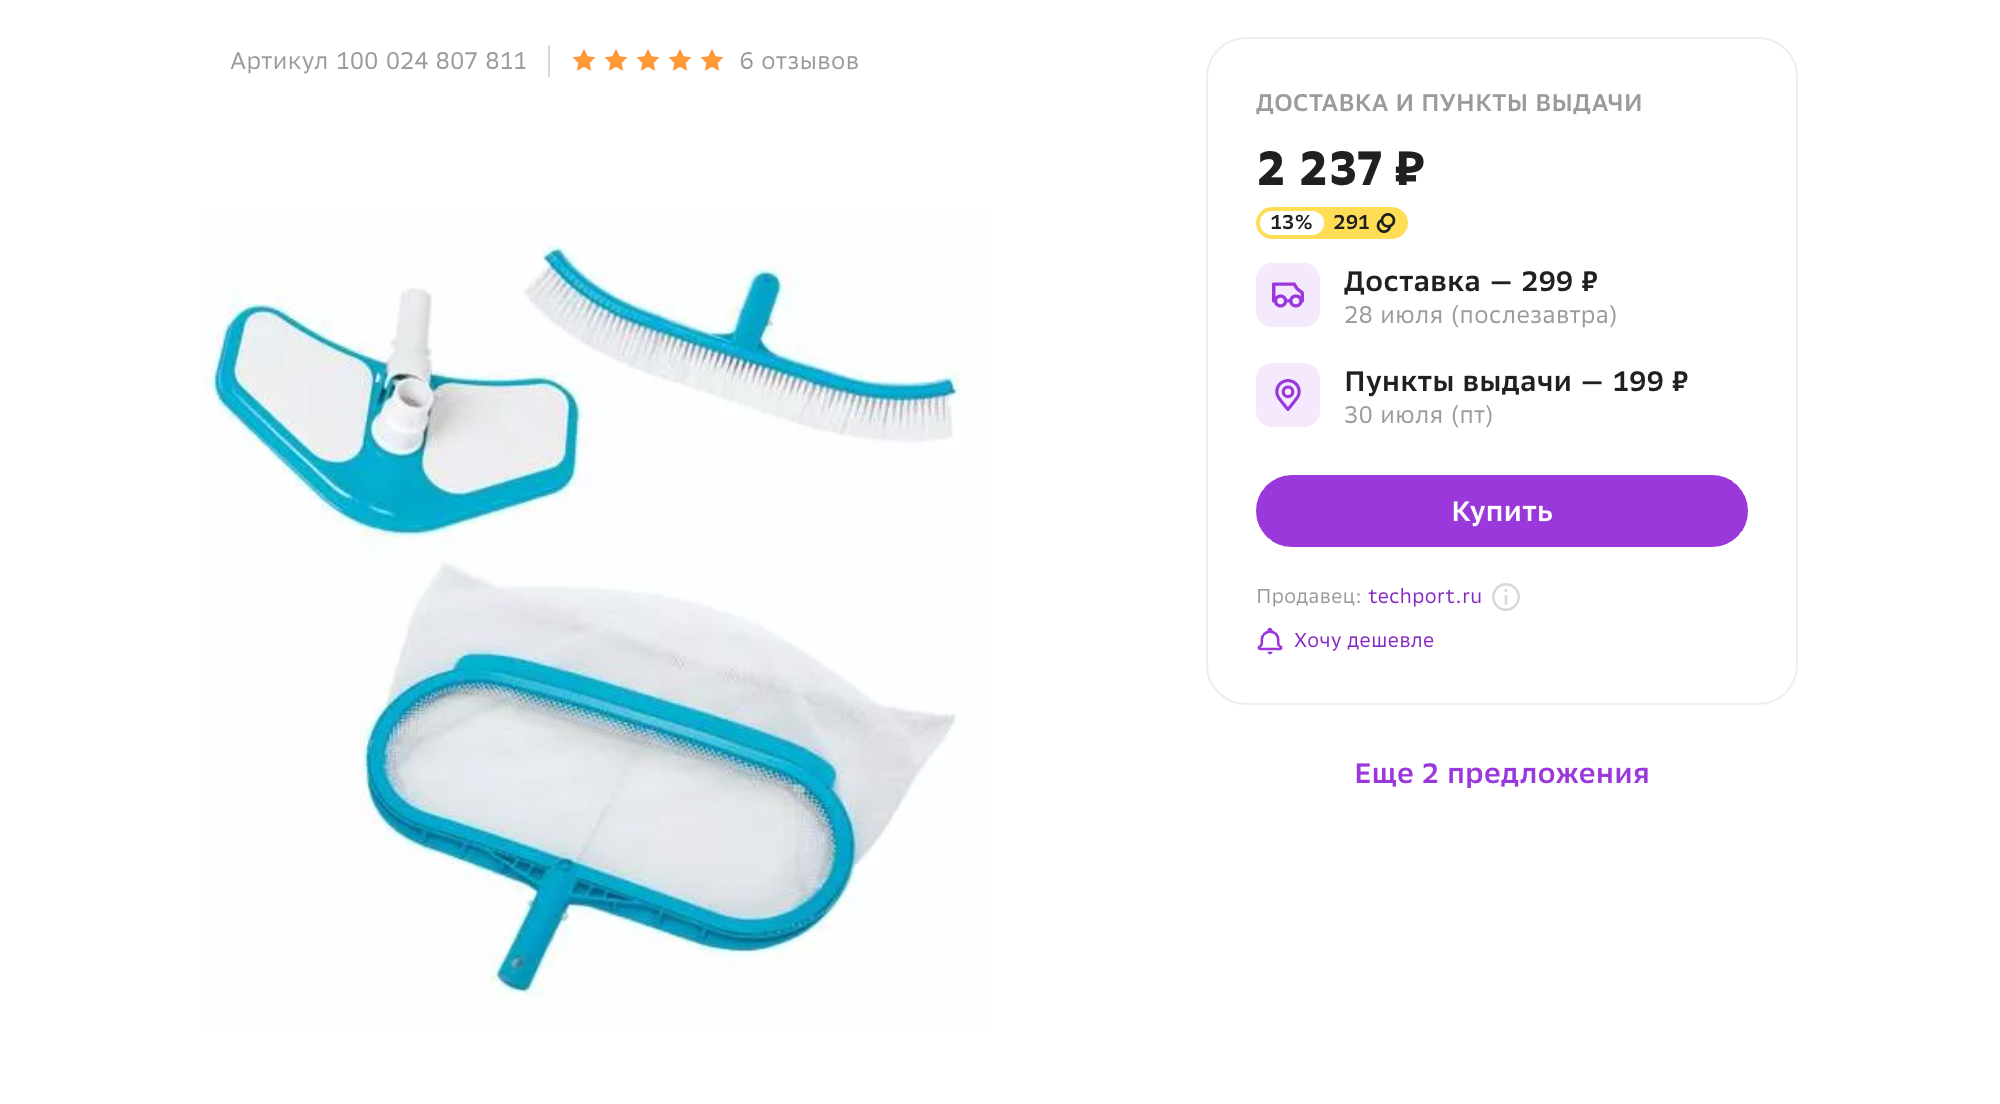 Это простая модель с щеткой и сачком, которую можно подключить к шлангу или фильтр-насосу бассейна. Источник: sbermegamarket.ru